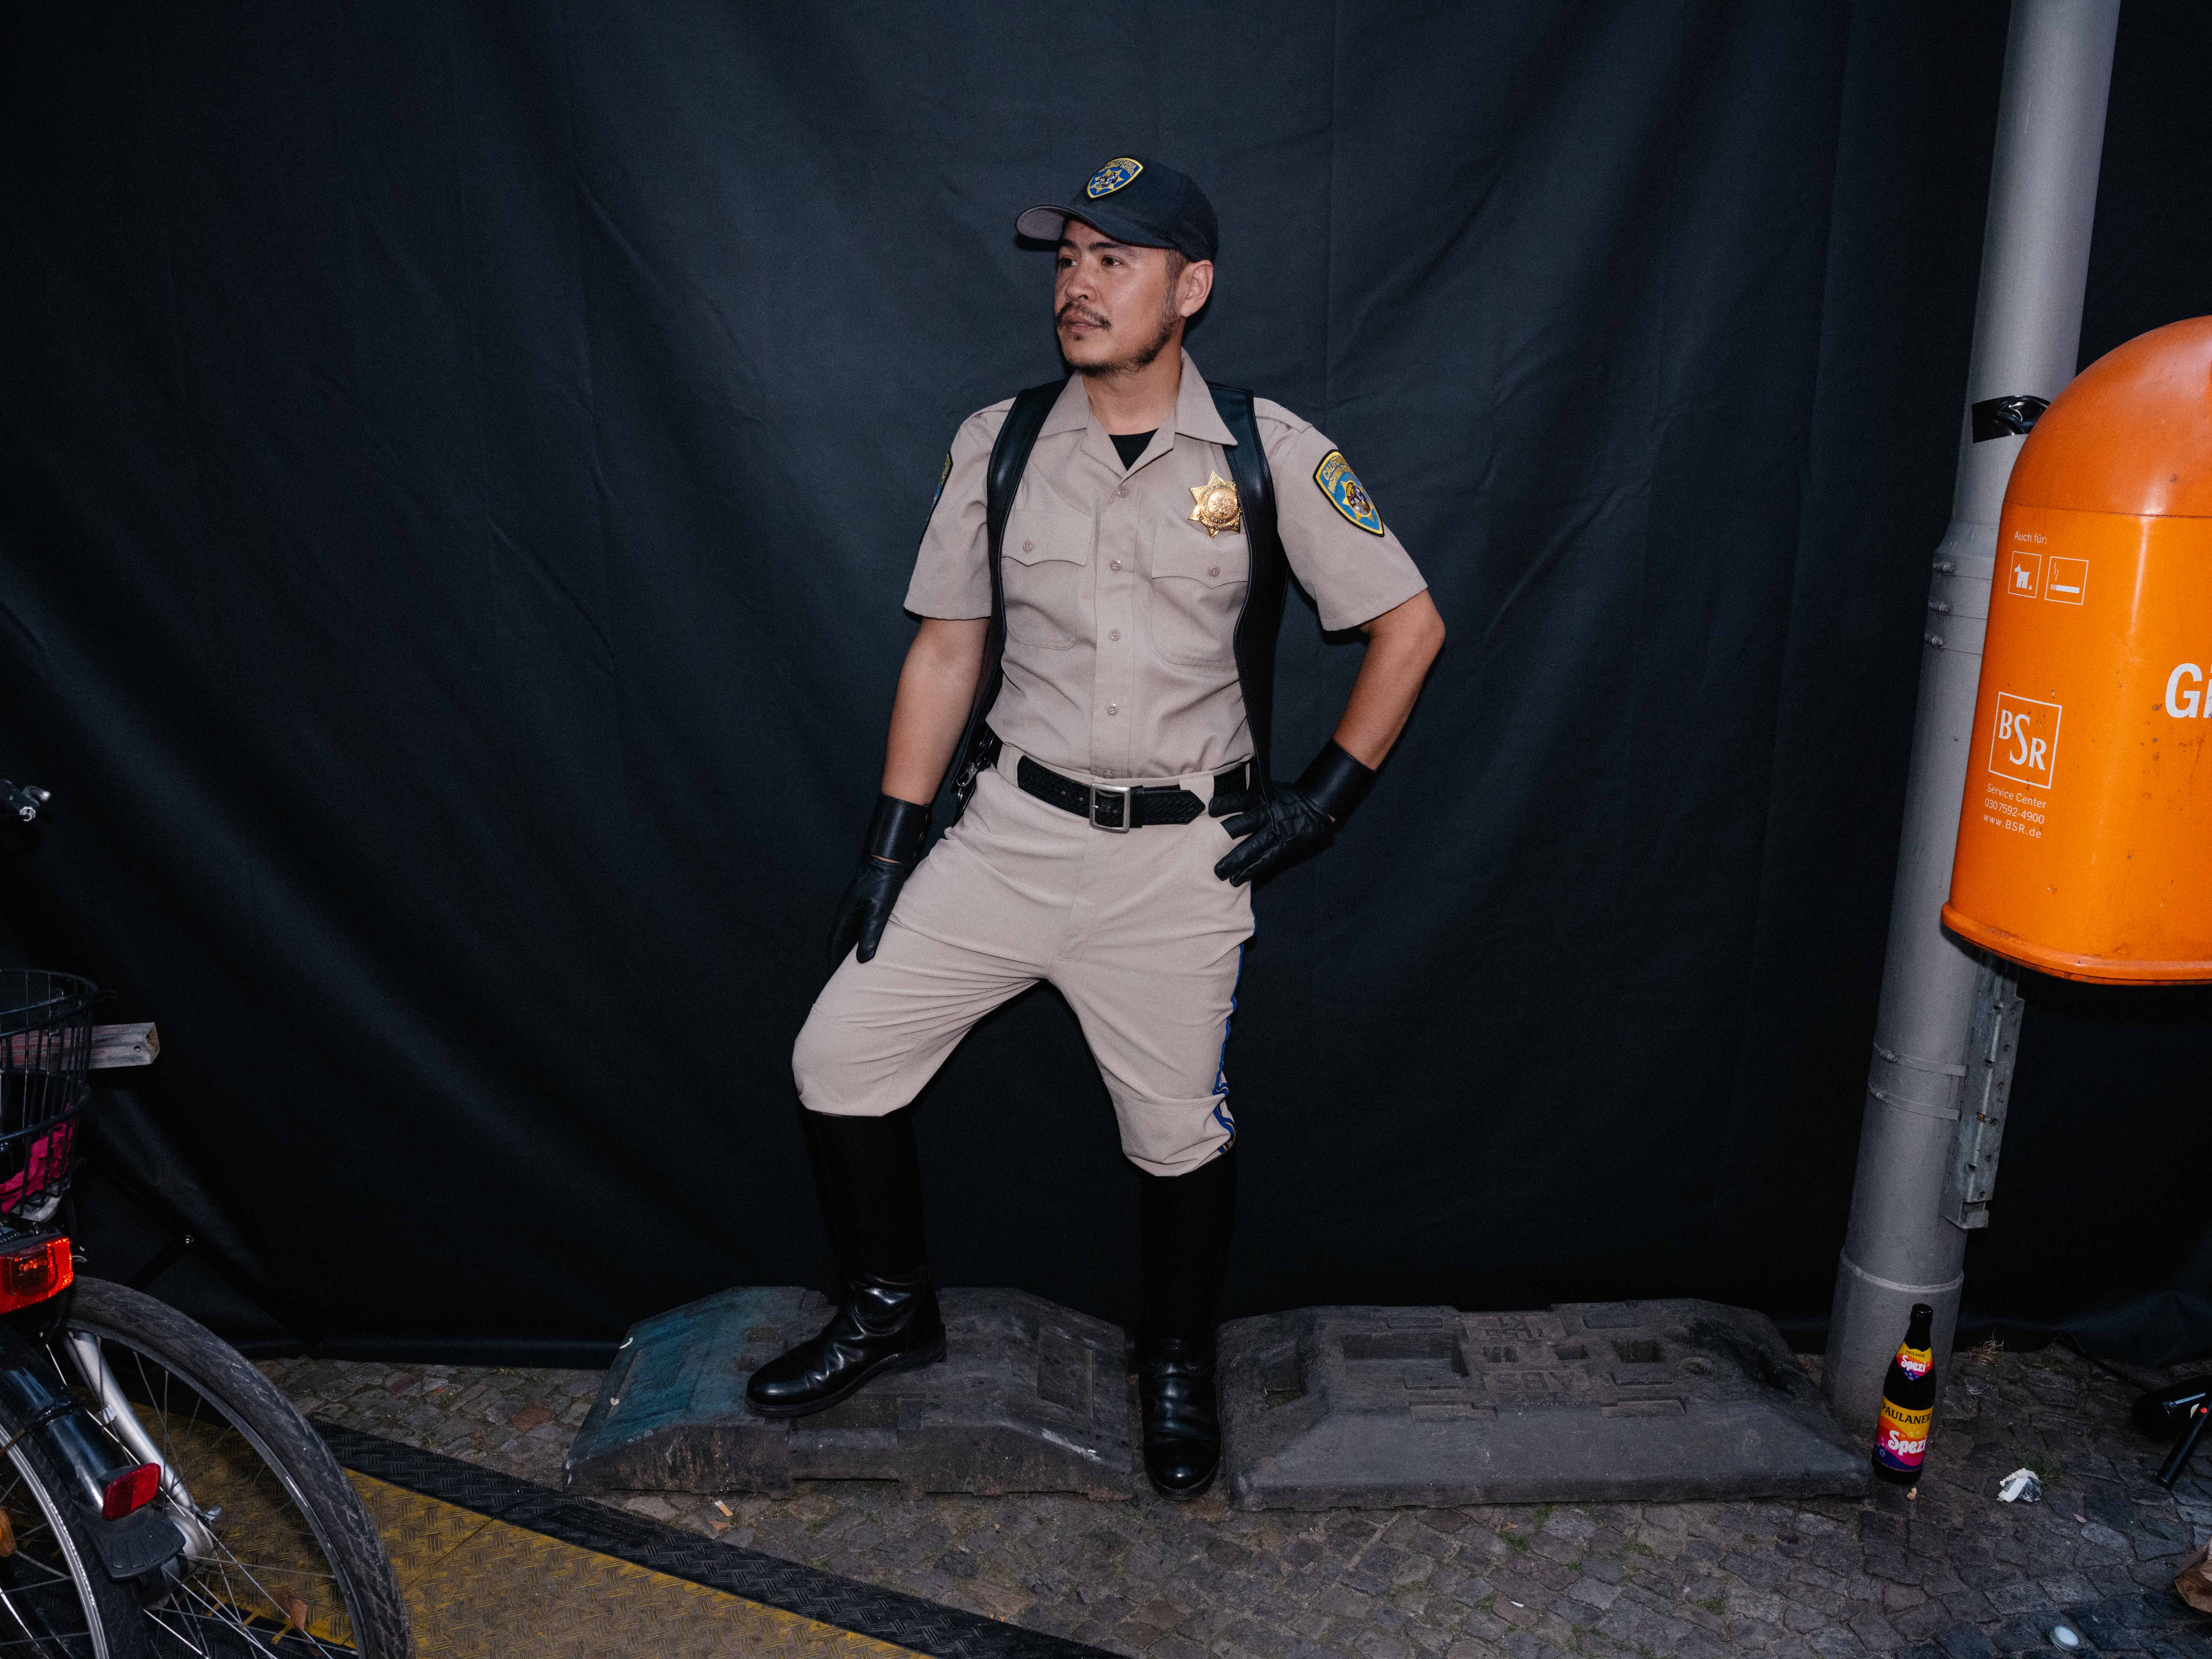 Ein Mann trägt ein US-Polizistenoutfit mit Lederstieferln bei einem Fetisch-Event